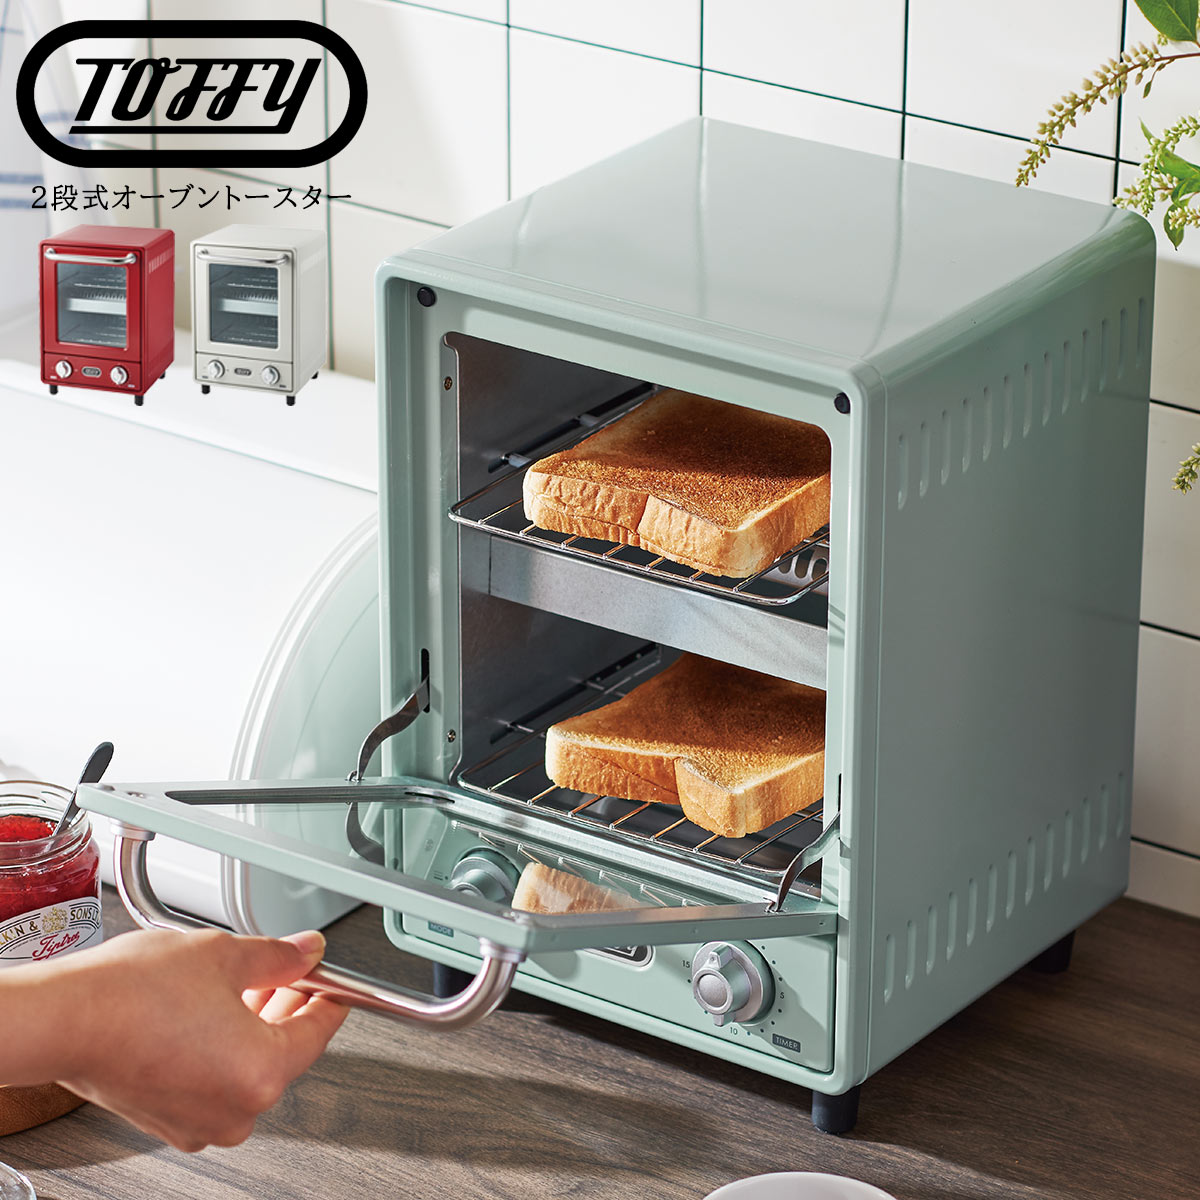 【楽天市場】Toffy トフィー 2段式オーブントースター 家電 キッチン 